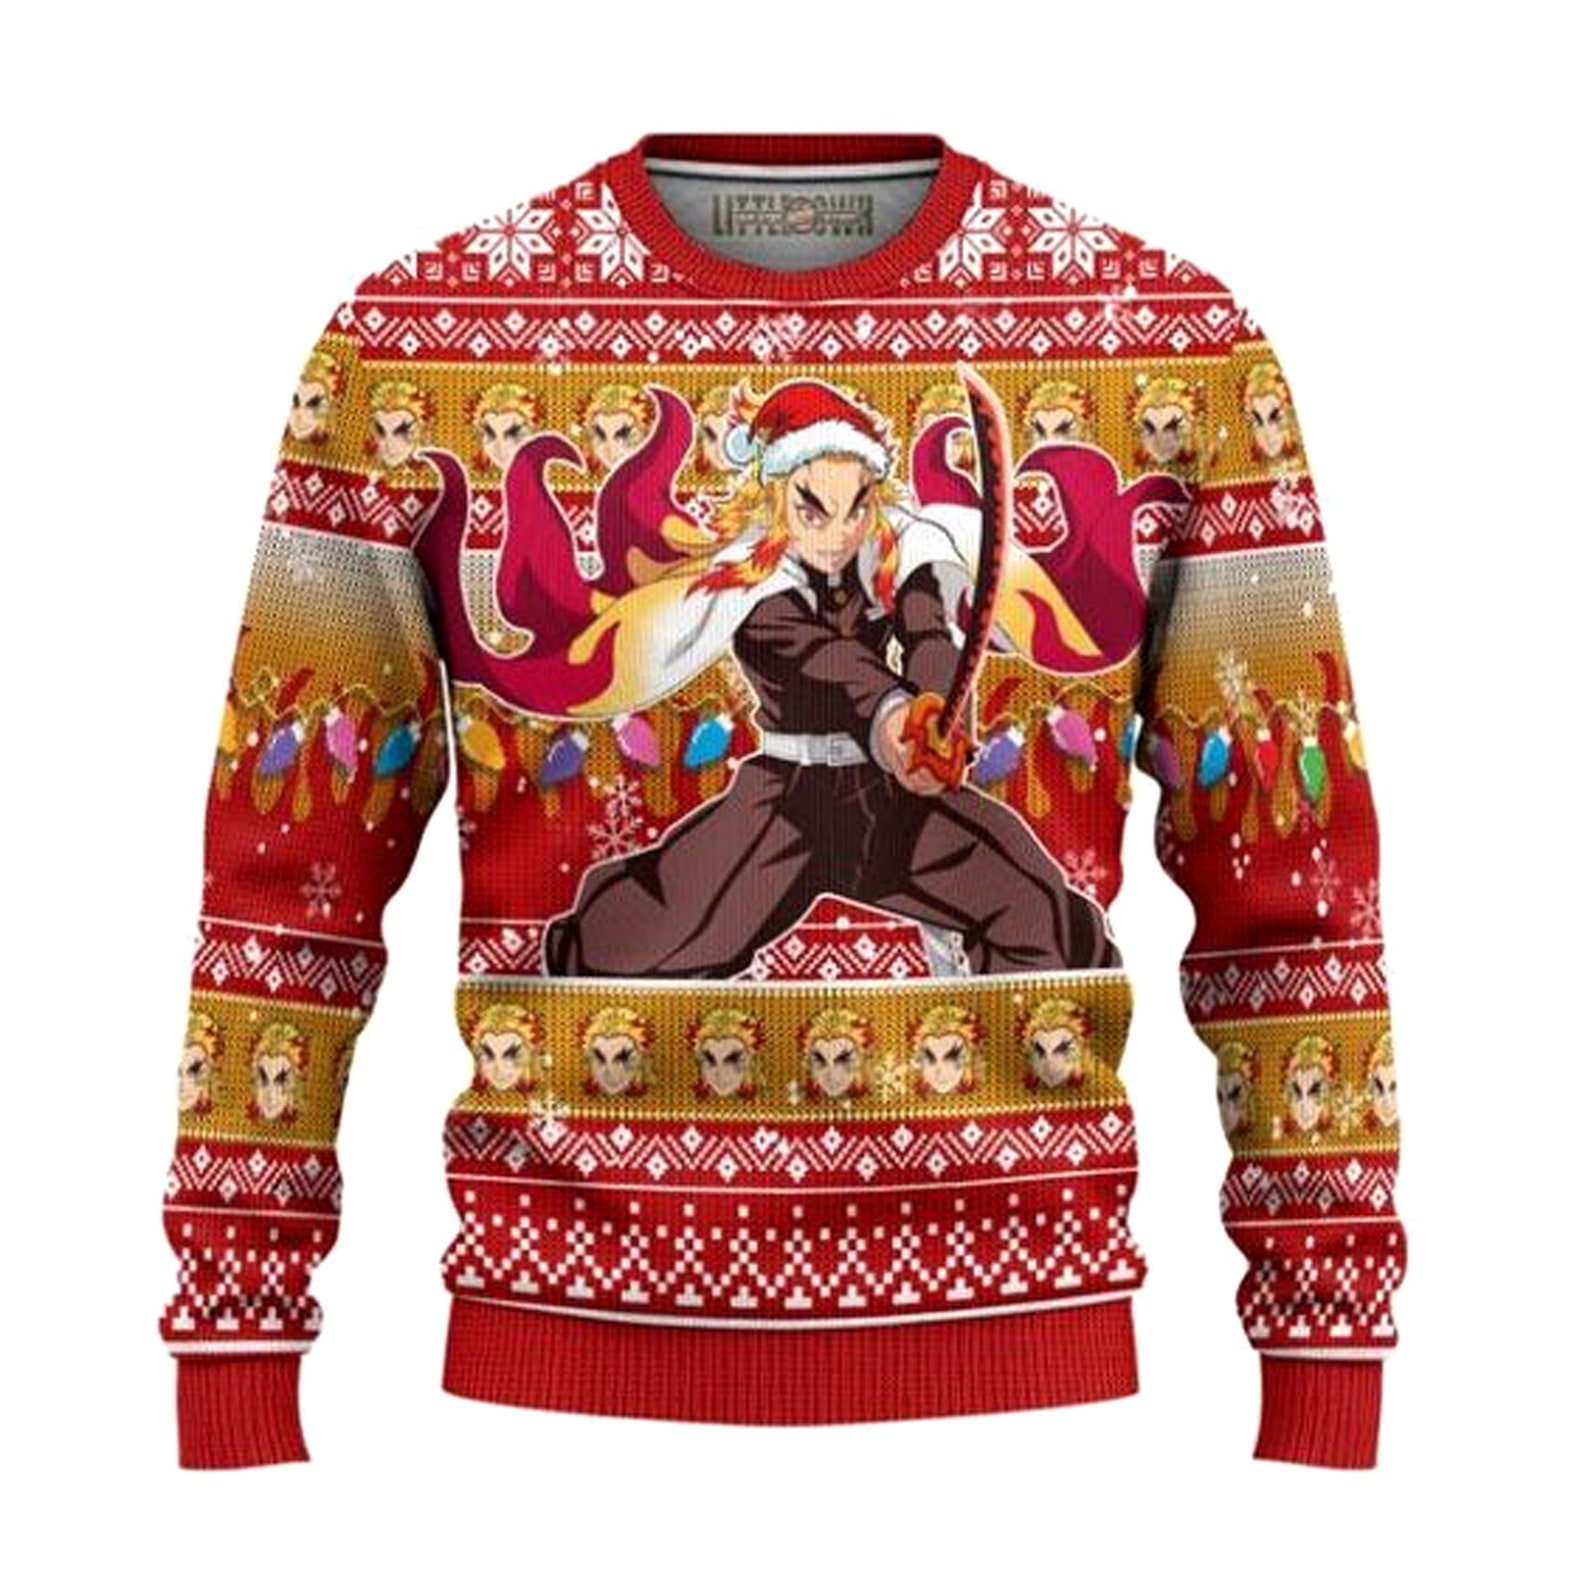 Anime ugly Christmas sweater